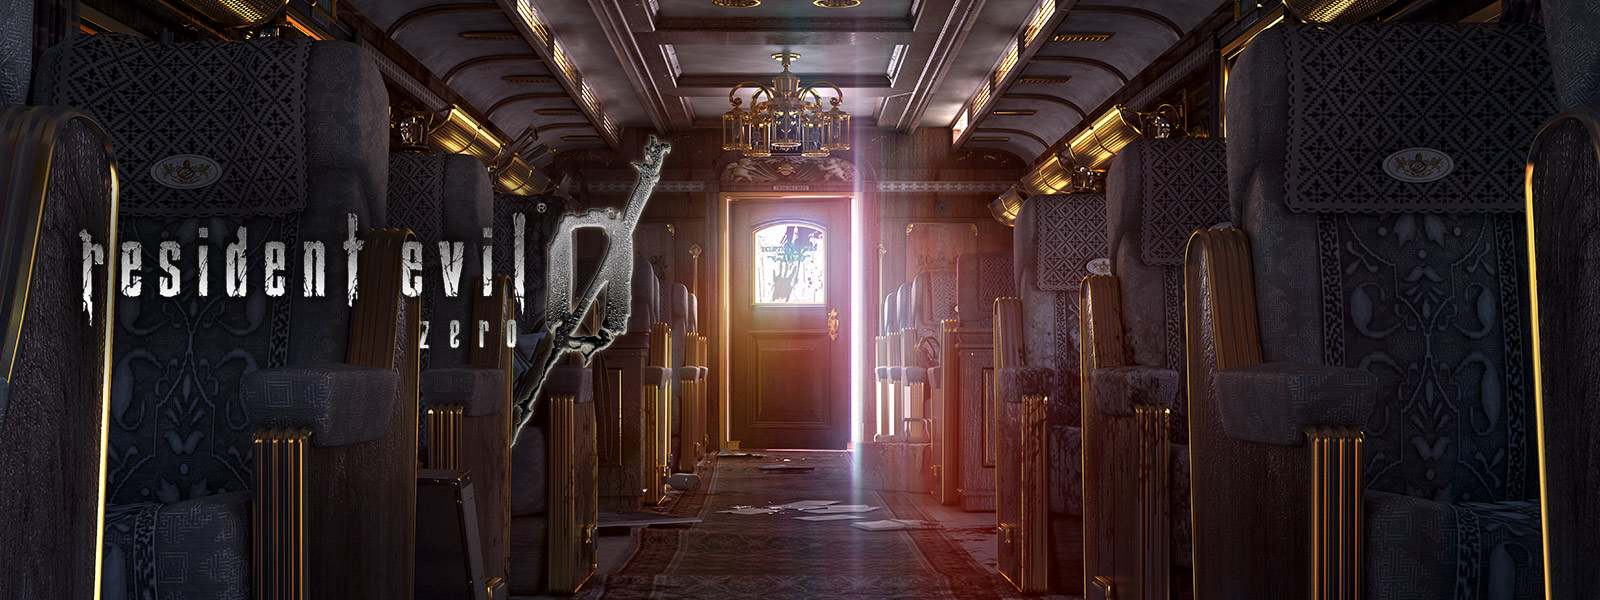 Resident Evil 0, фотография пестрого интерьера вагона поезда